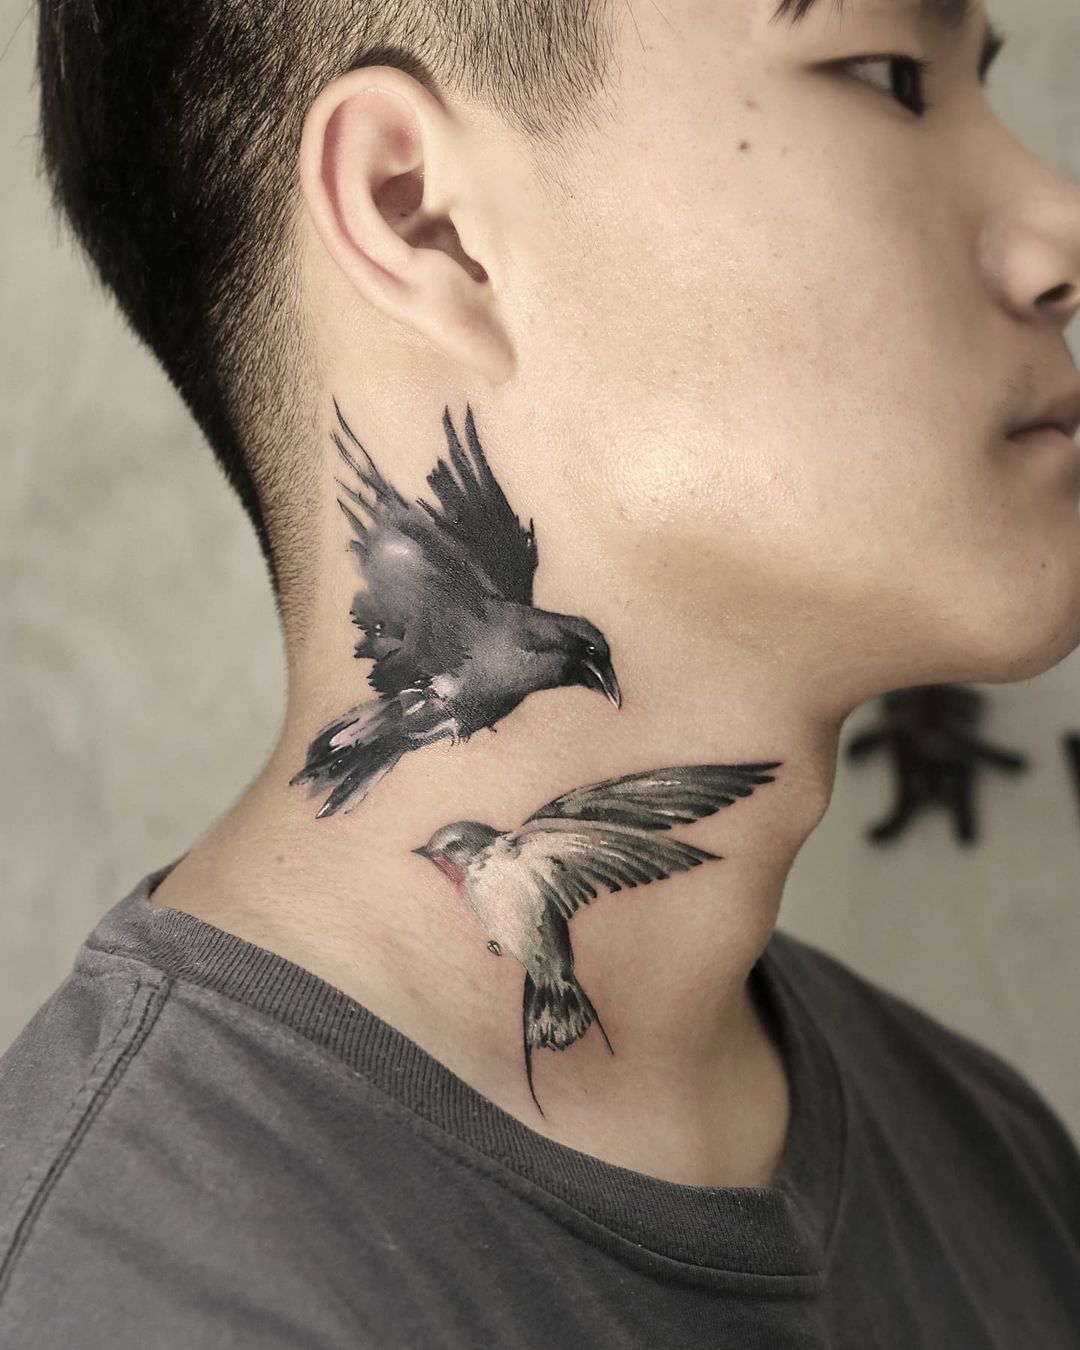 StillerInk  Second day neck tattoo vikings bird  Facebook